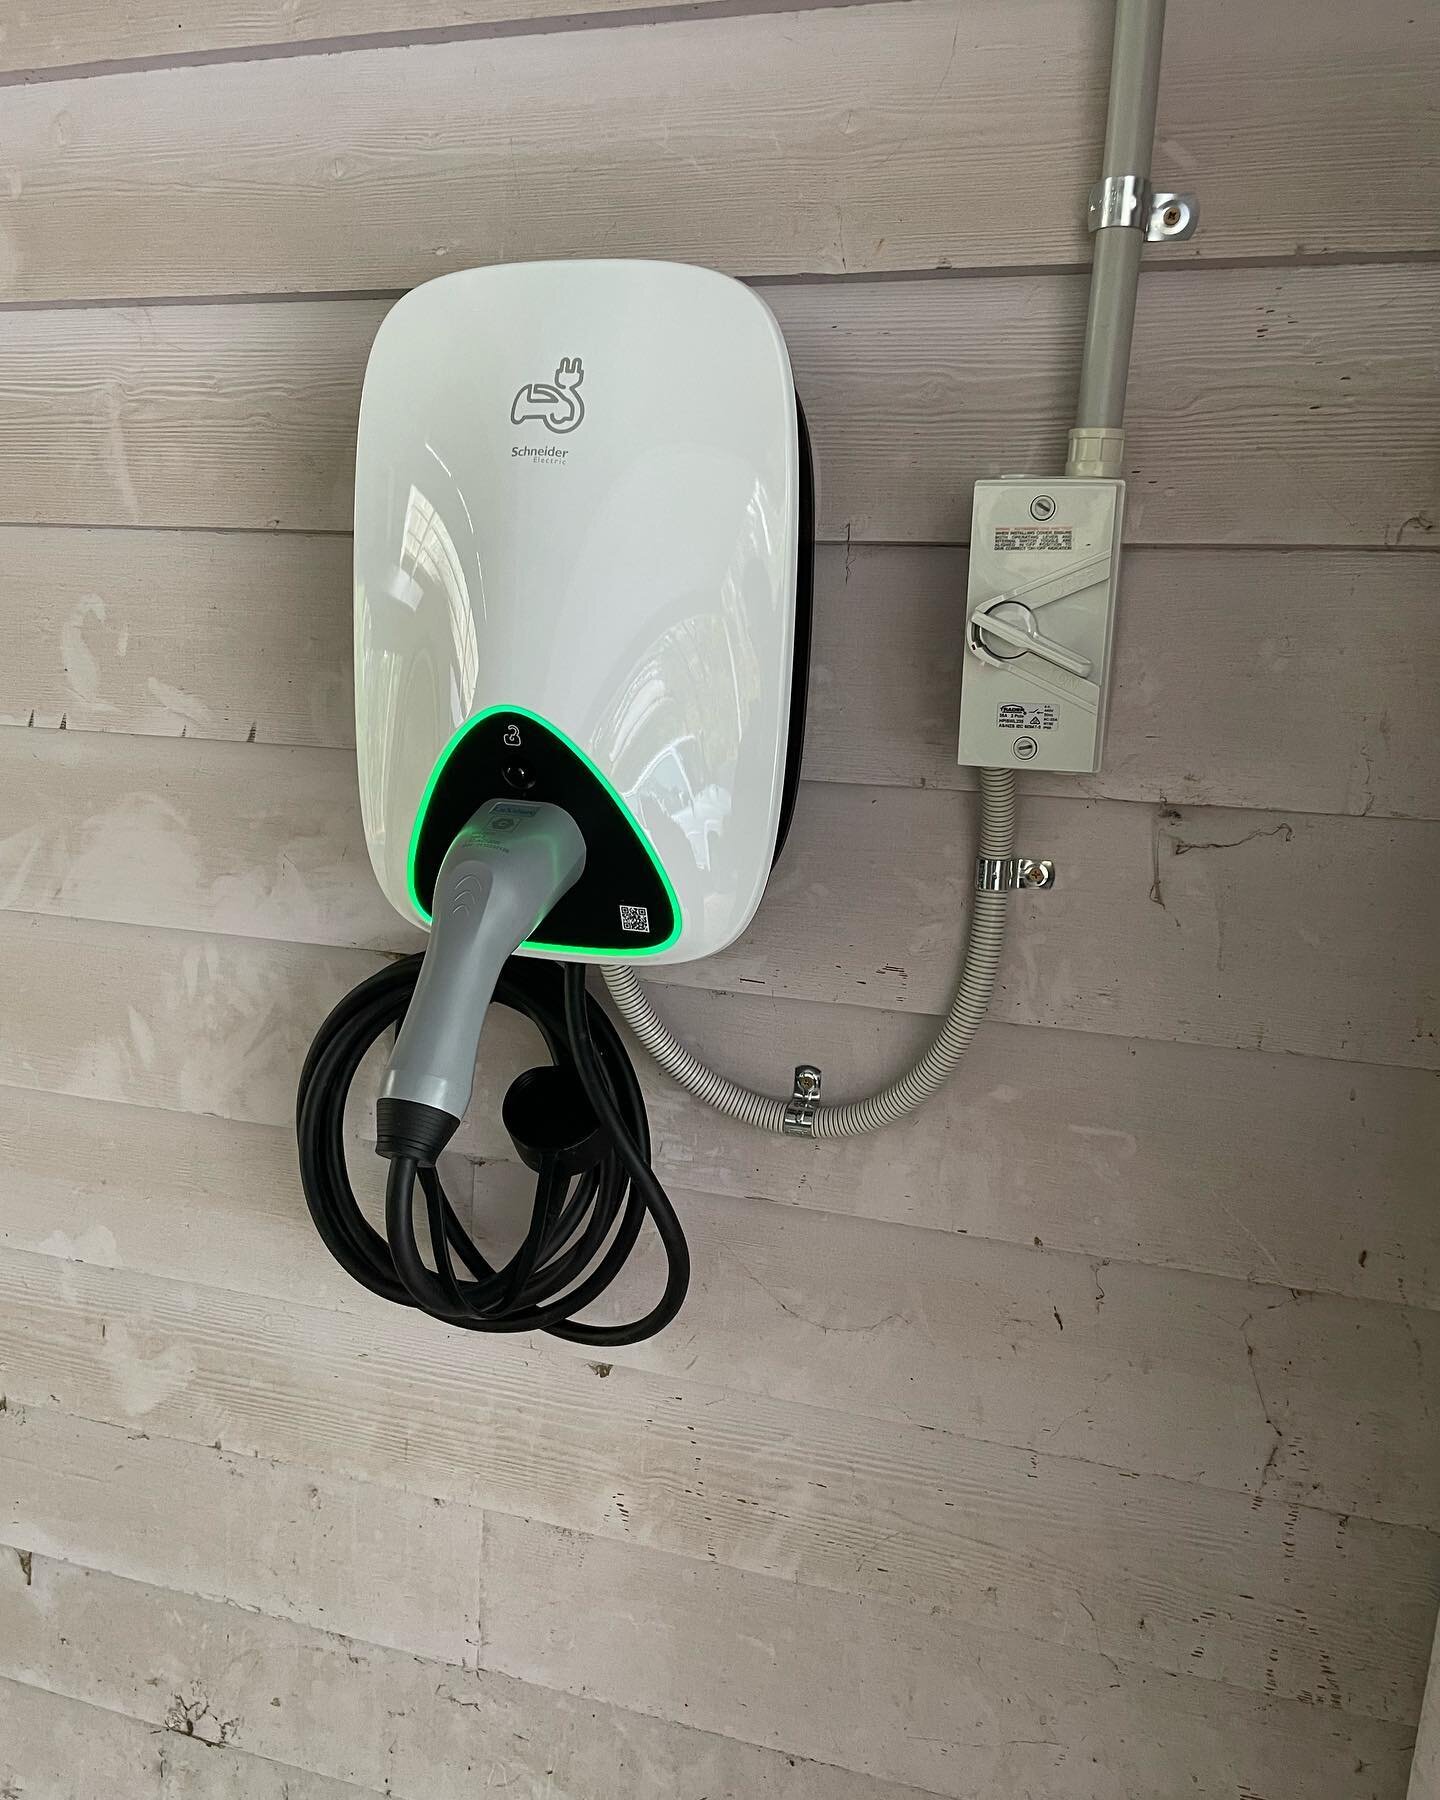 Schneider Electric Evlink car charger installed for our Hurstbridge clients ⚡️🚘
.

.

.

.
#evlink #evcar #homecarcharger #carcharger #electriccar #schniederelectric #clipsal #electrician #localelectrician